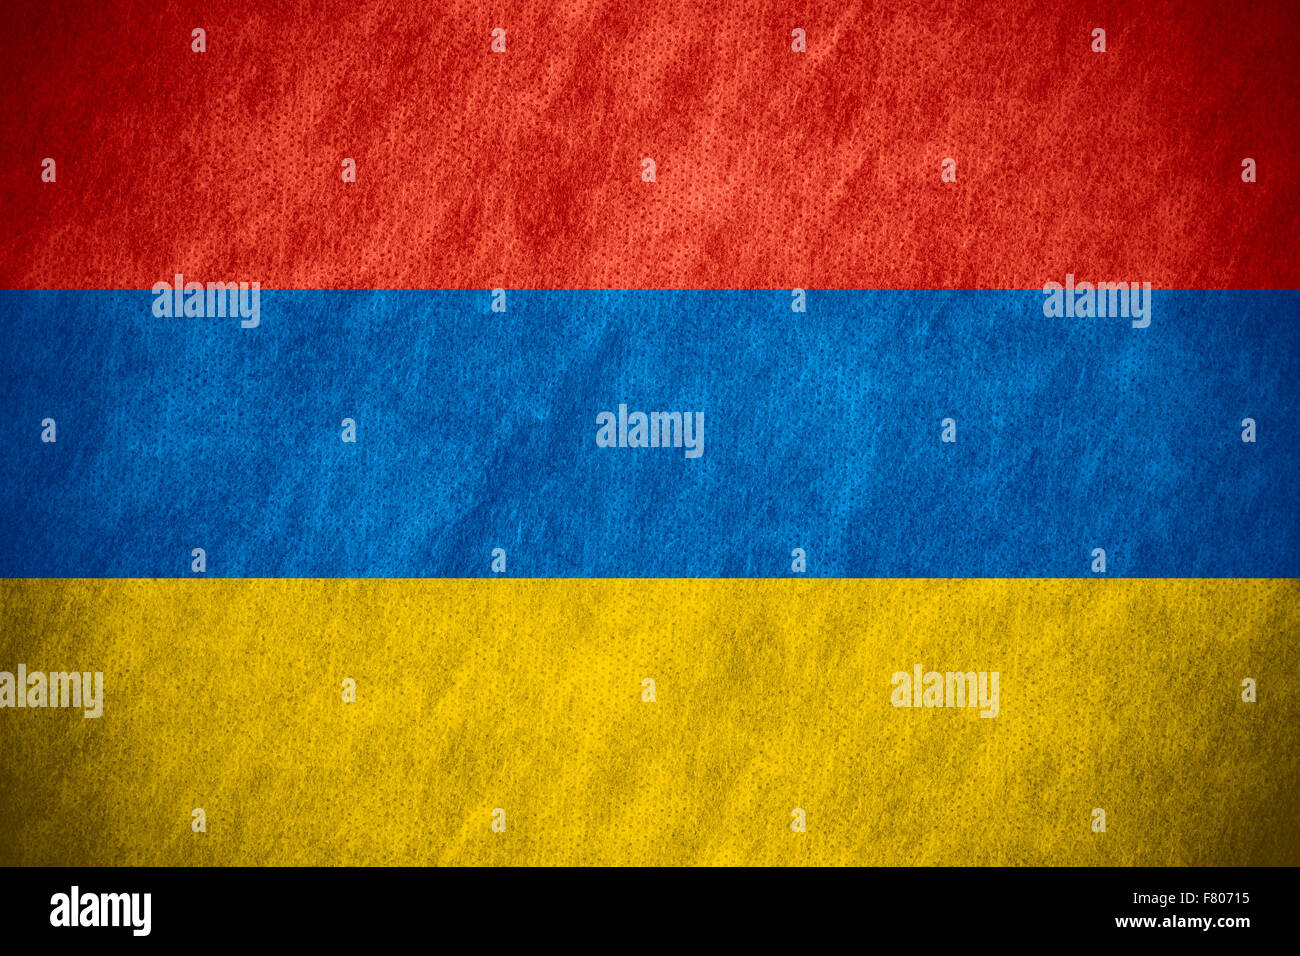 flag of Armenia or Armenian banner on canvas texture Stock Photo